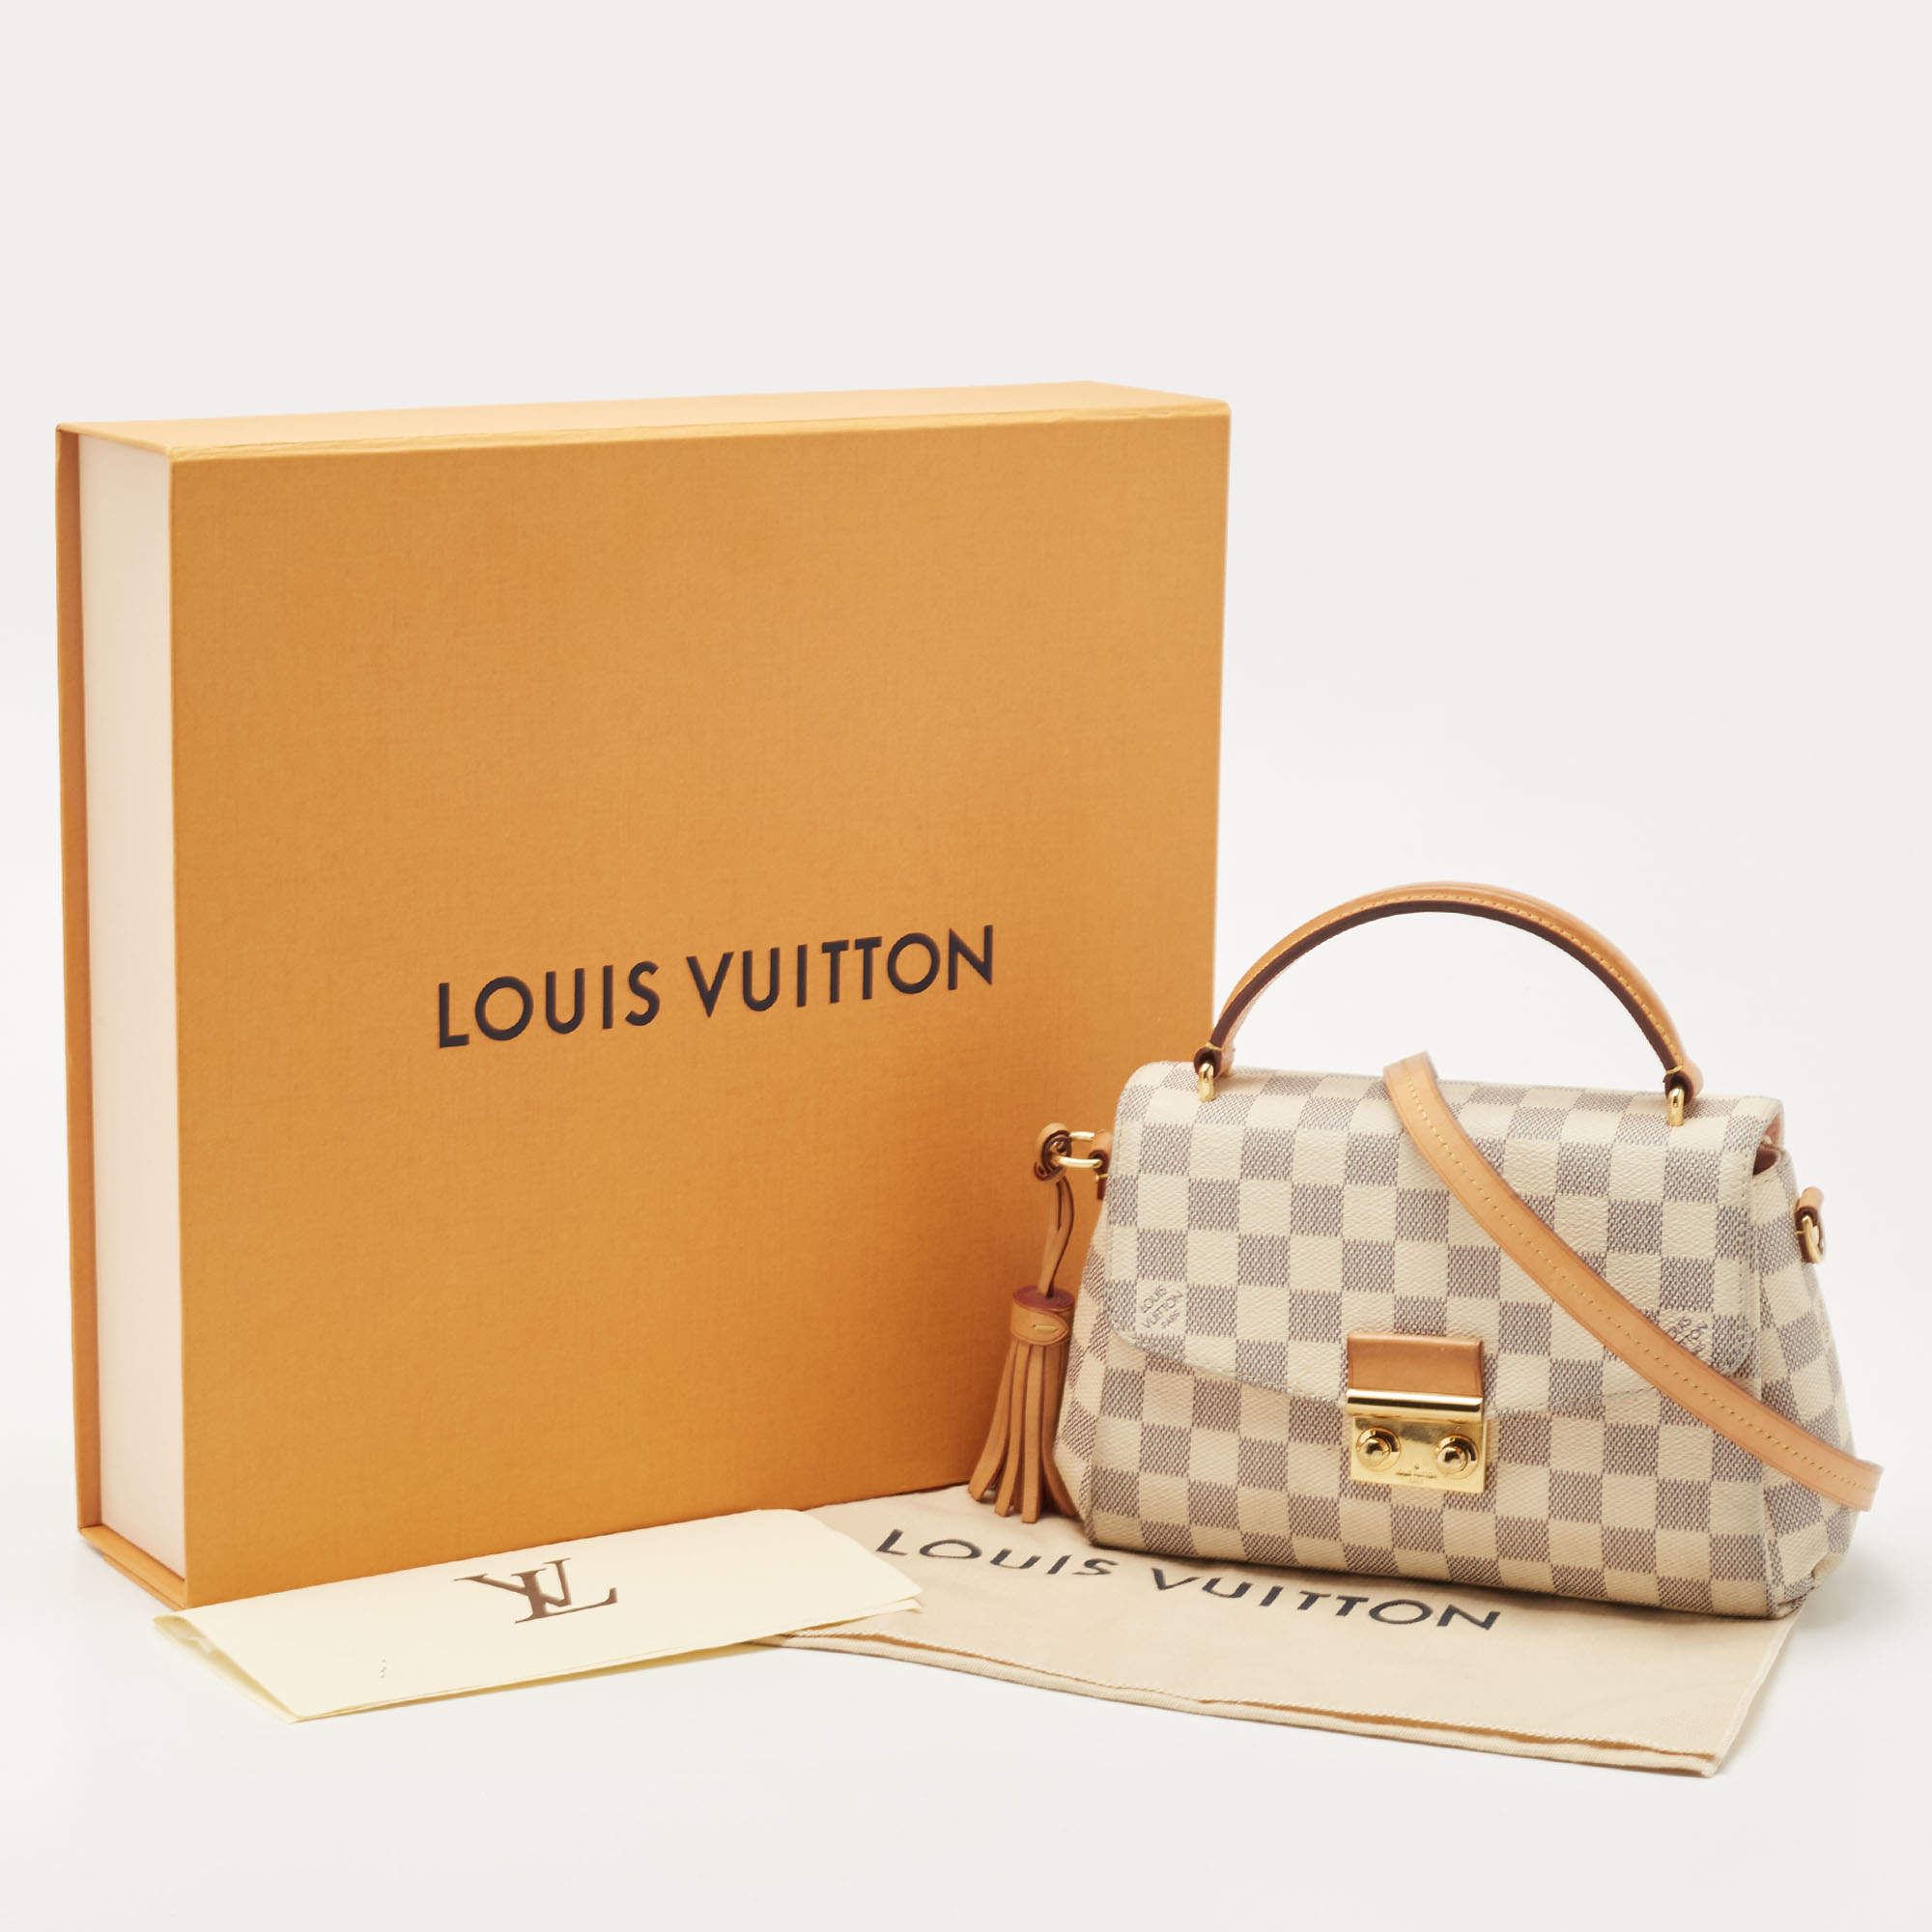 Bag of the day! LV Croisette Damier Azur #lv #lvbag #lvbags